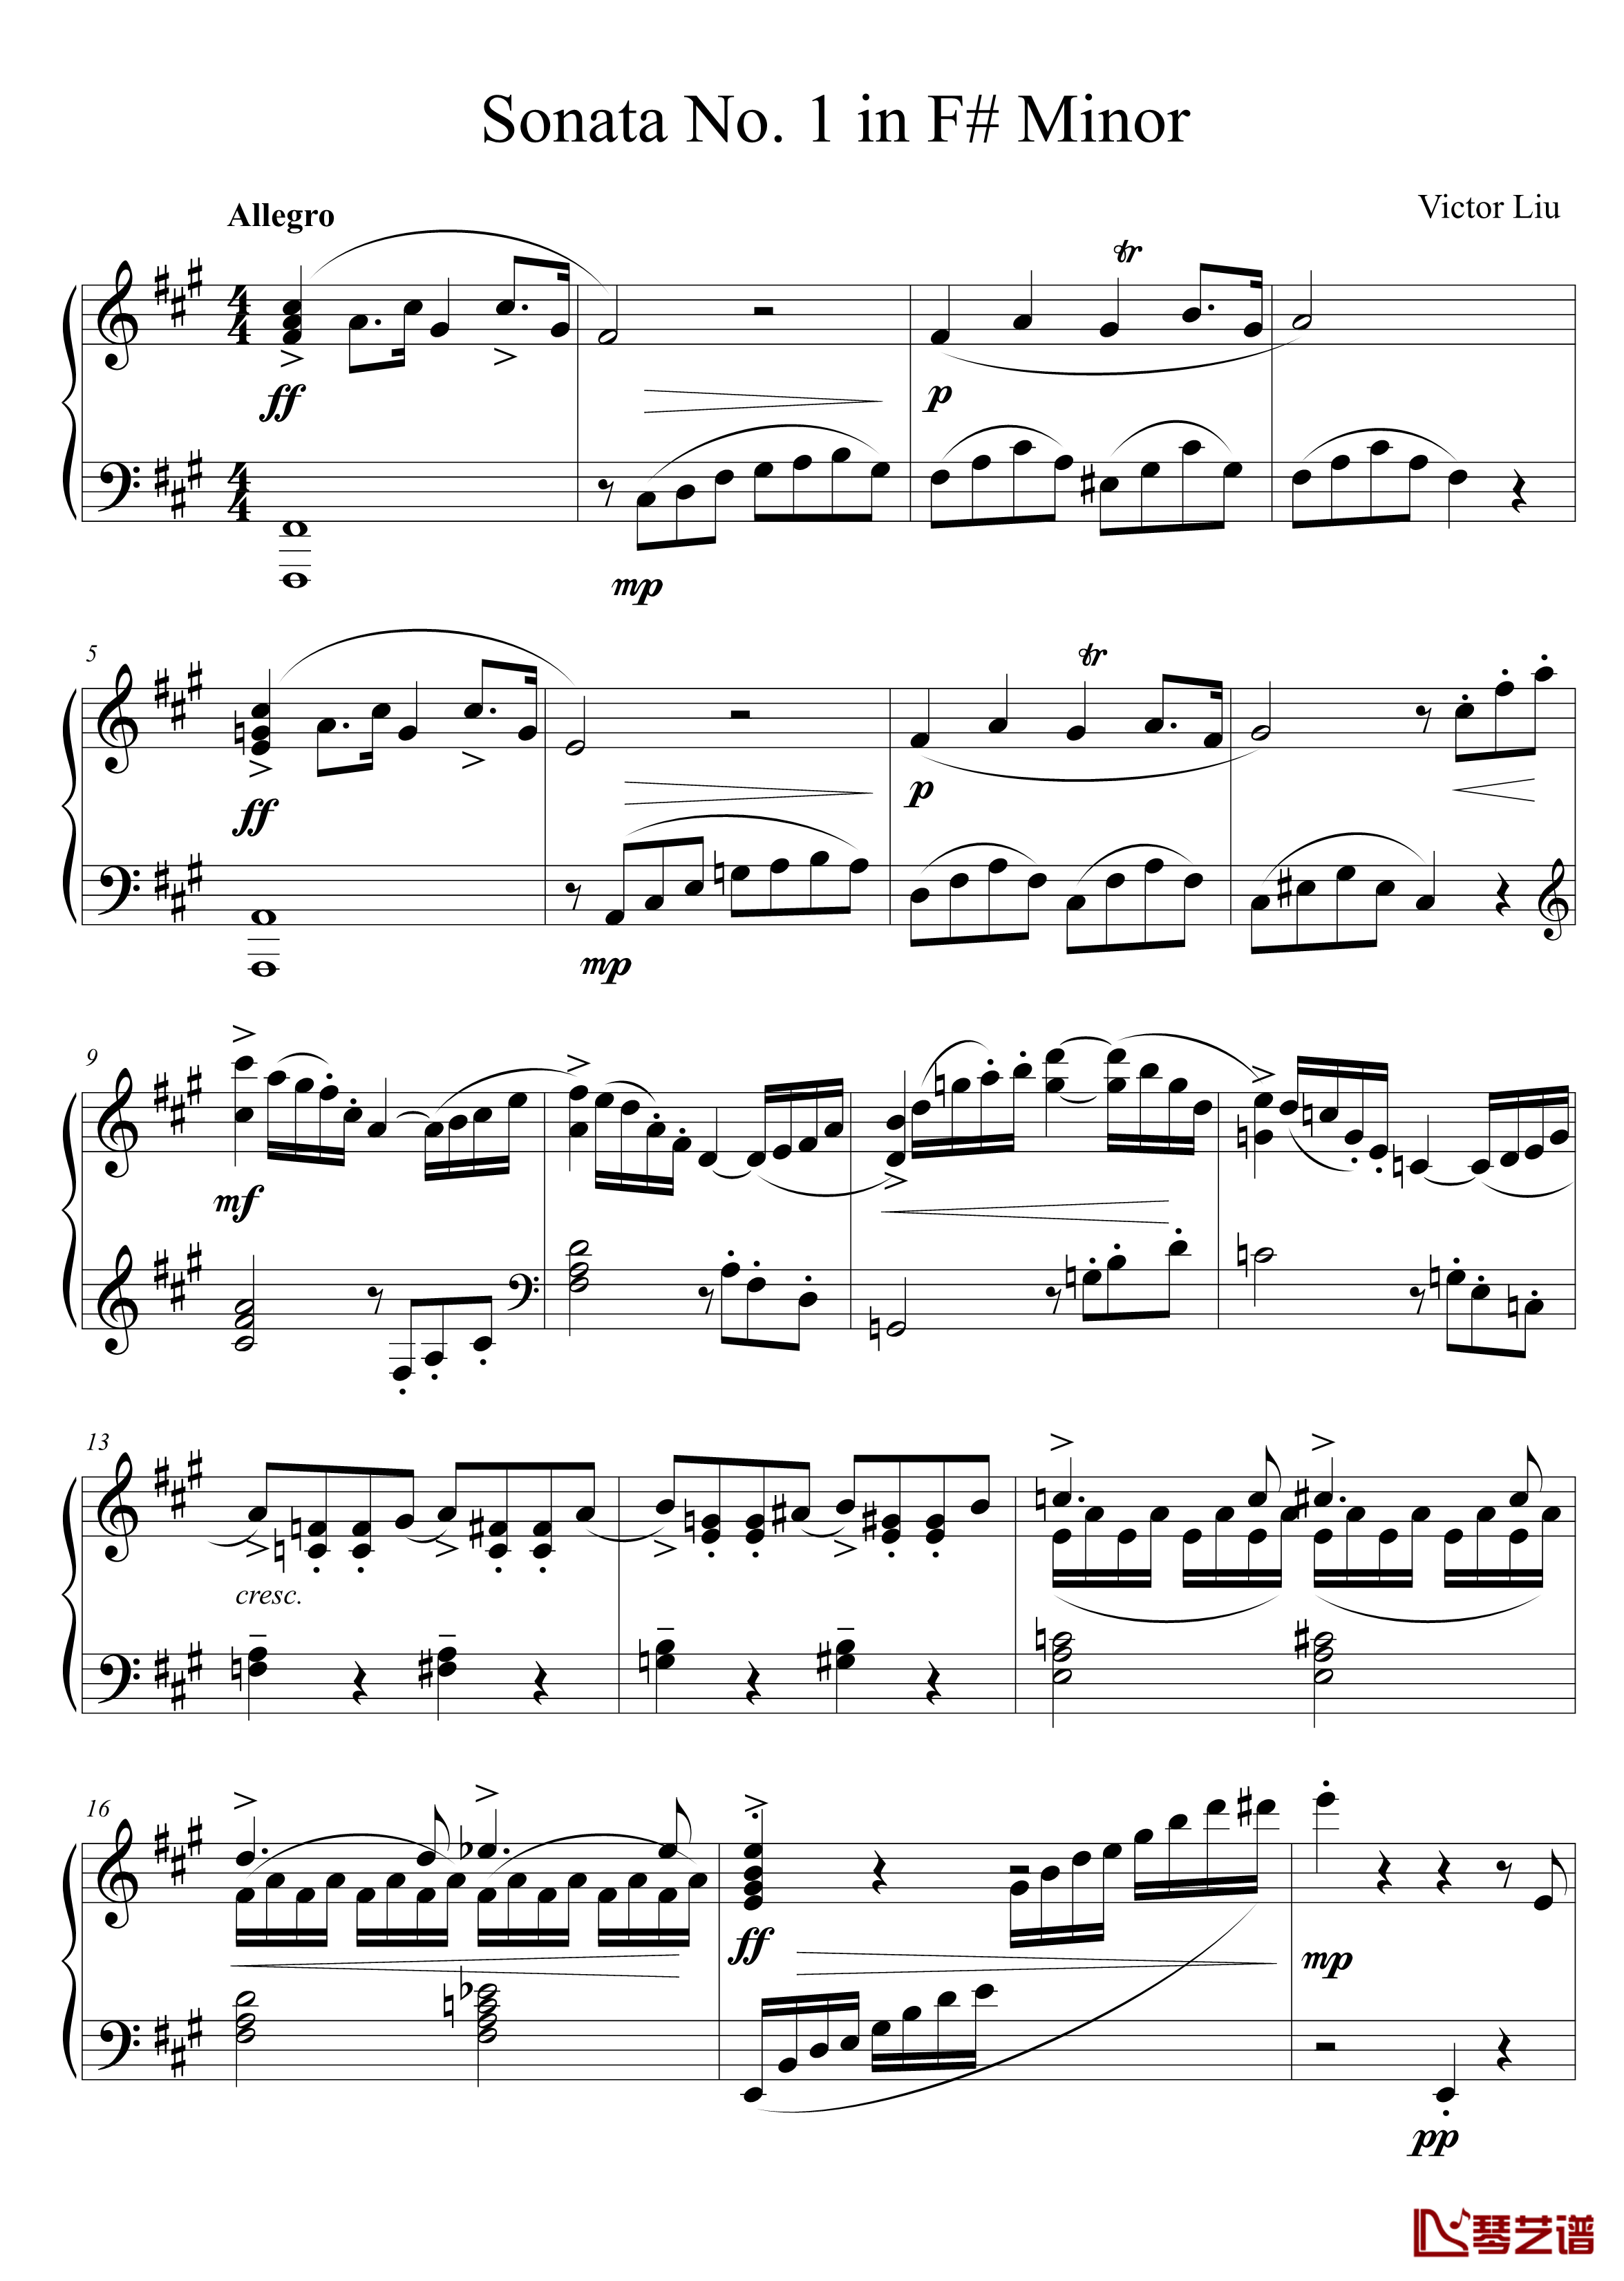 钢琴奏鸣曲No. 1钢琴谱 第一乐章-千古留名1